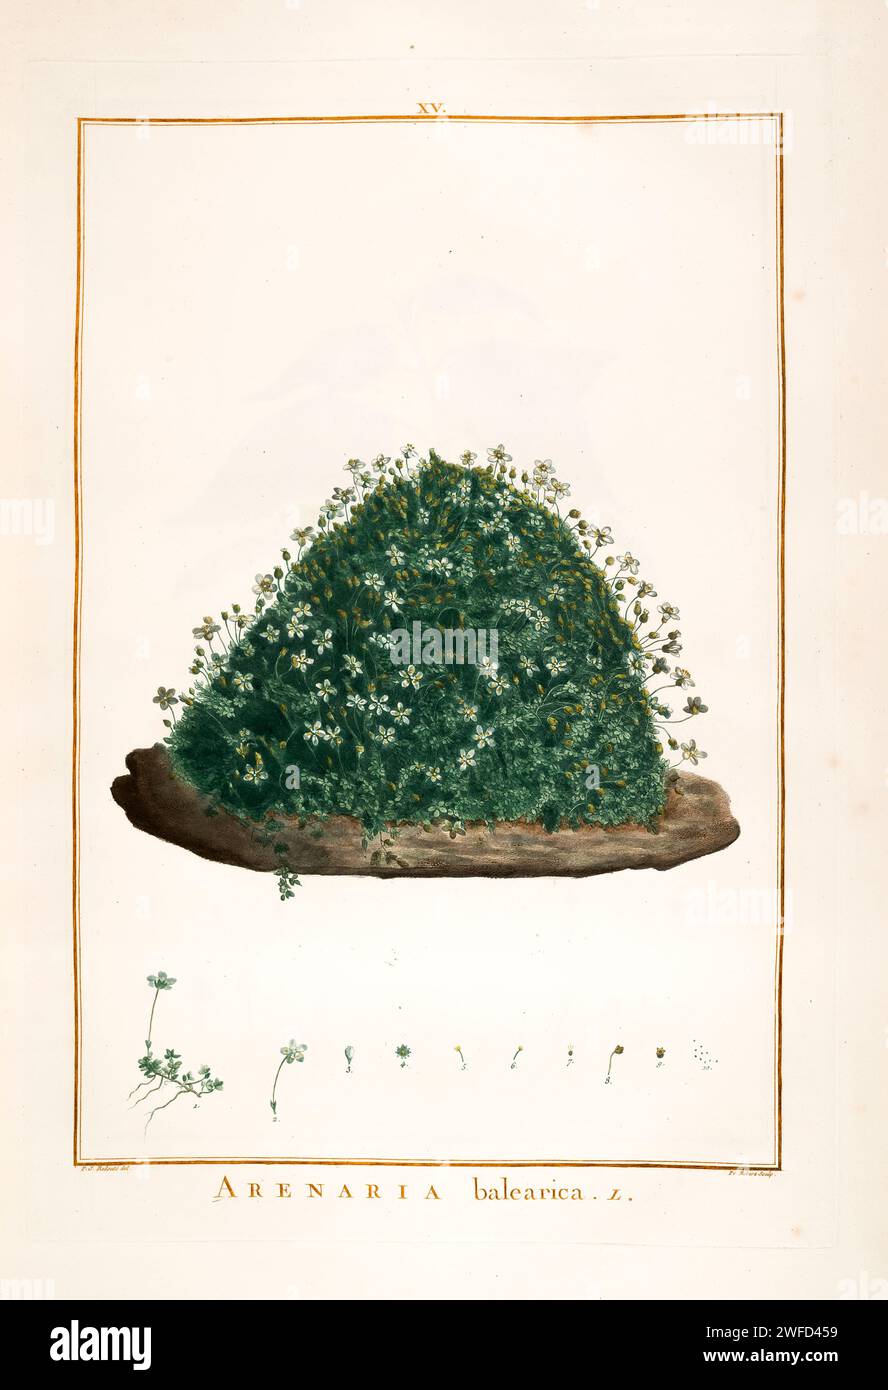 L'arenaria balearica, l'erba arenaria moscata, è una specie di pianta in fiore della famiglia Caryophyllaceae, originaria delle Isole Baleari, della Corsica, della Sardegna e dell'Italia continentale. Fu descritto per la prima volta da Carl Linneo nel 1768. Dipinto a mano da Pierre-Joseph Redouté nel 1784 Foto Stock